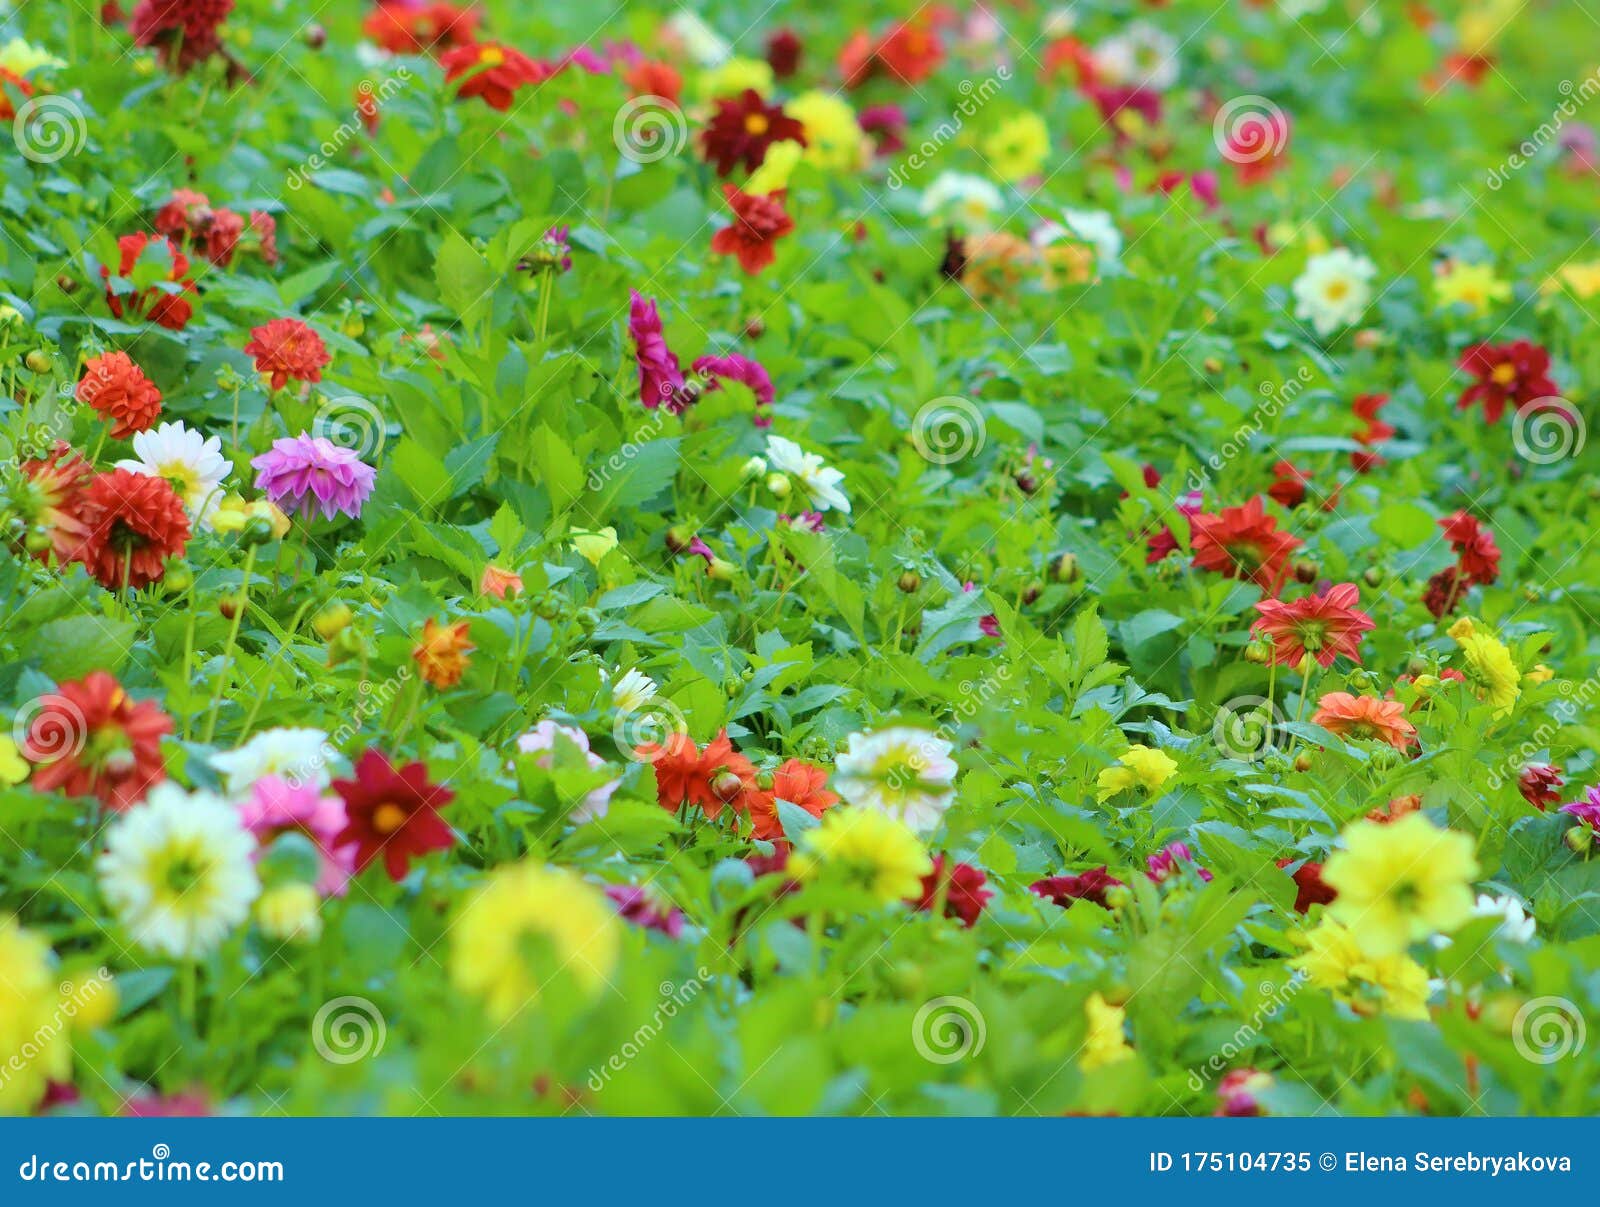 Best 500 Garden Photos HD  Download Free Photos On Unsplash